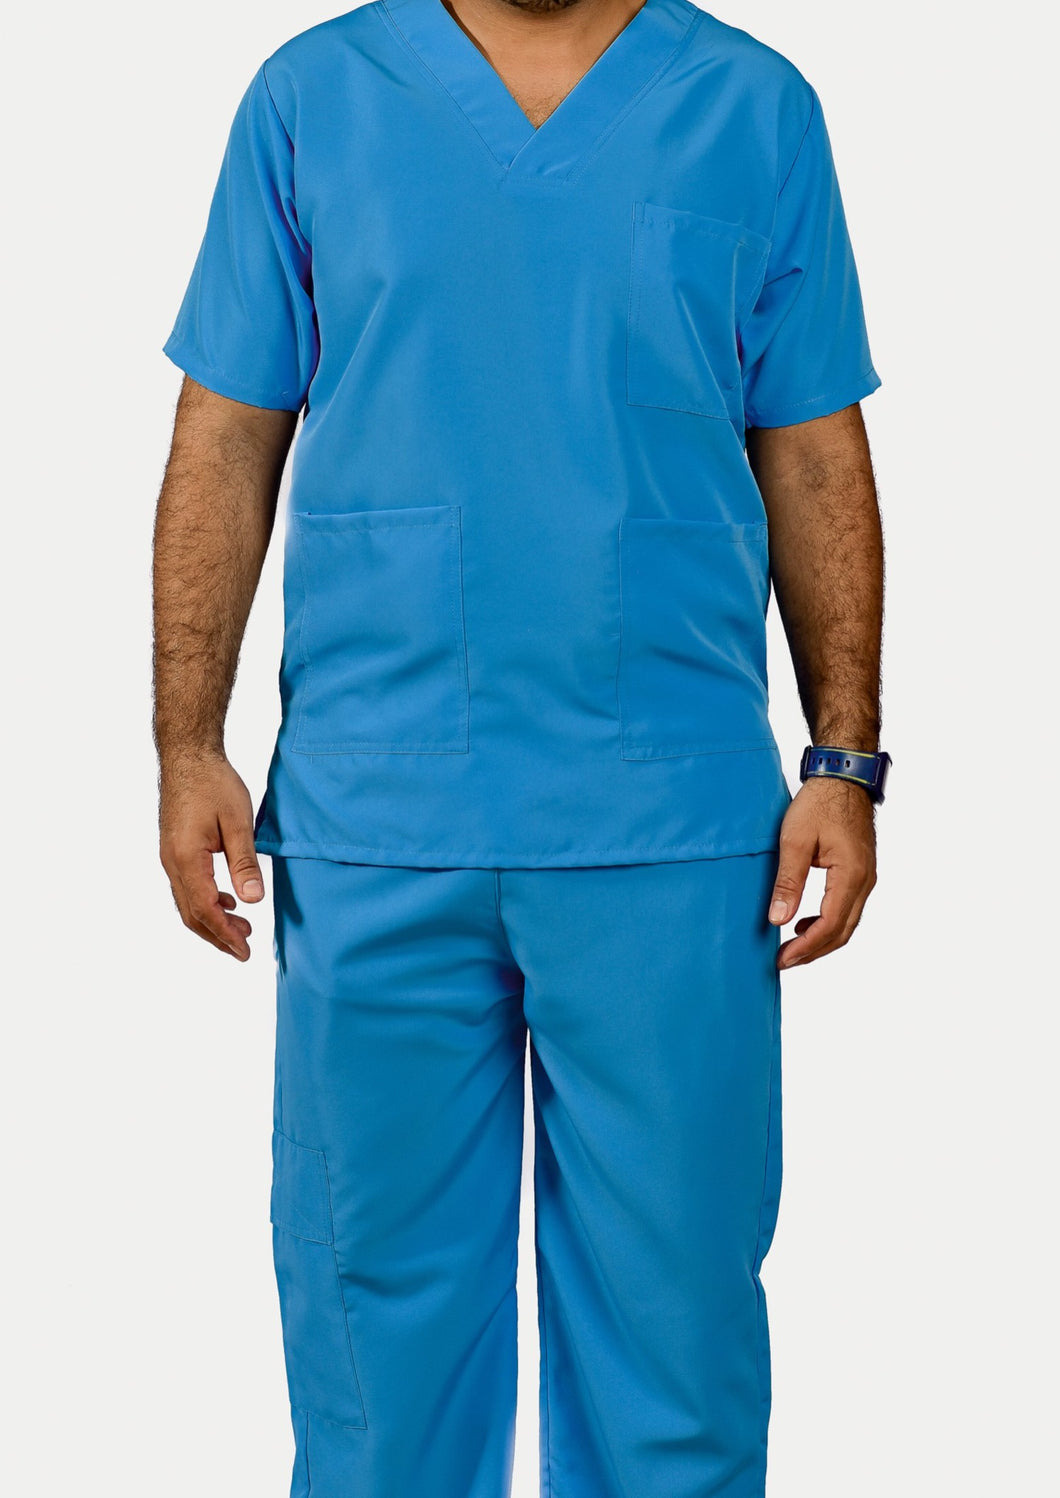 Uniforme Medico Azul Claro - Hombre